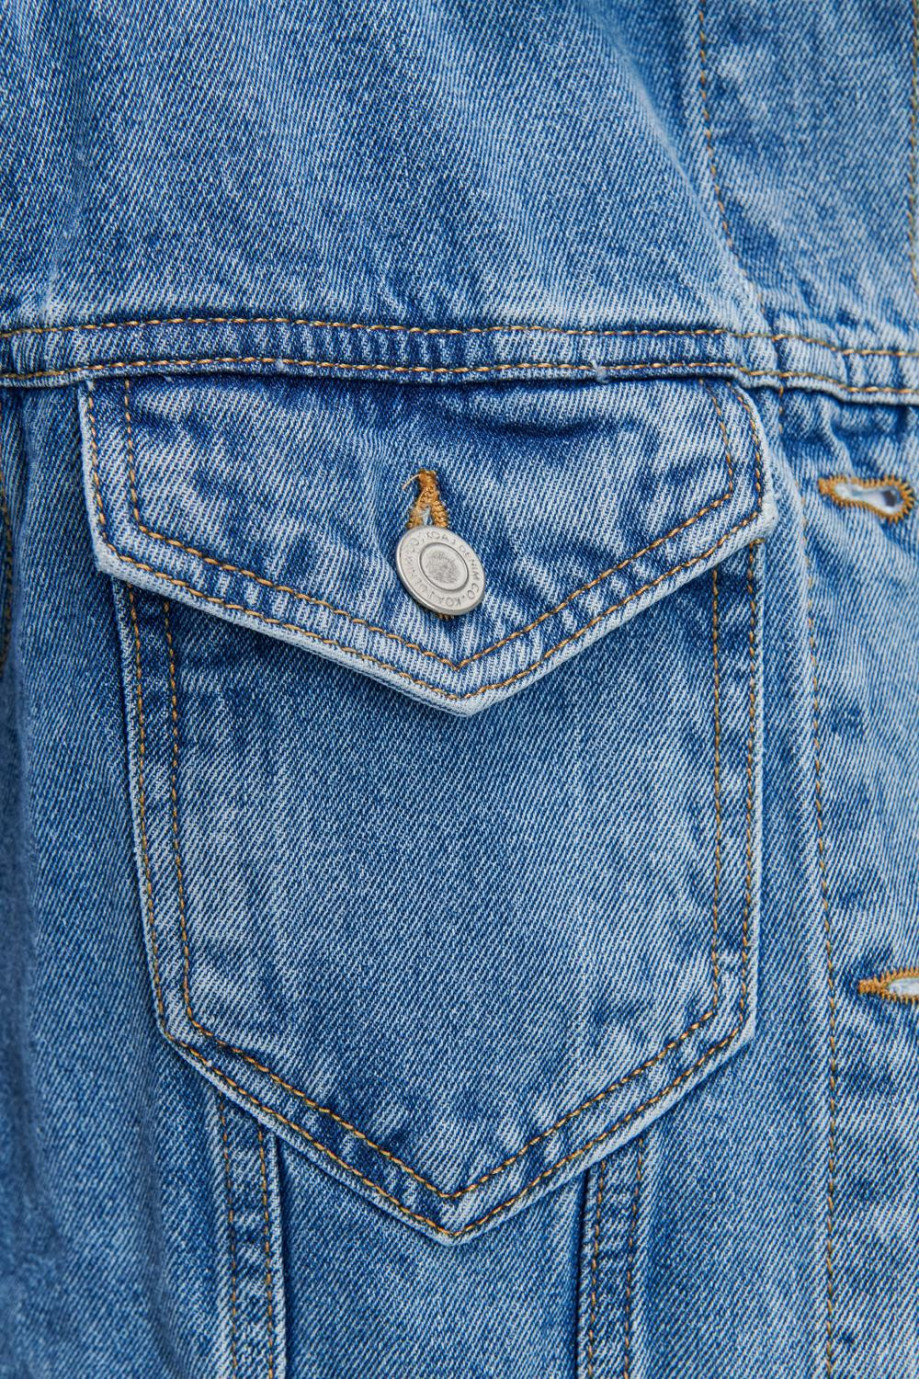 Chaqueta de jean oversize azul clara con bolsillos funcionales